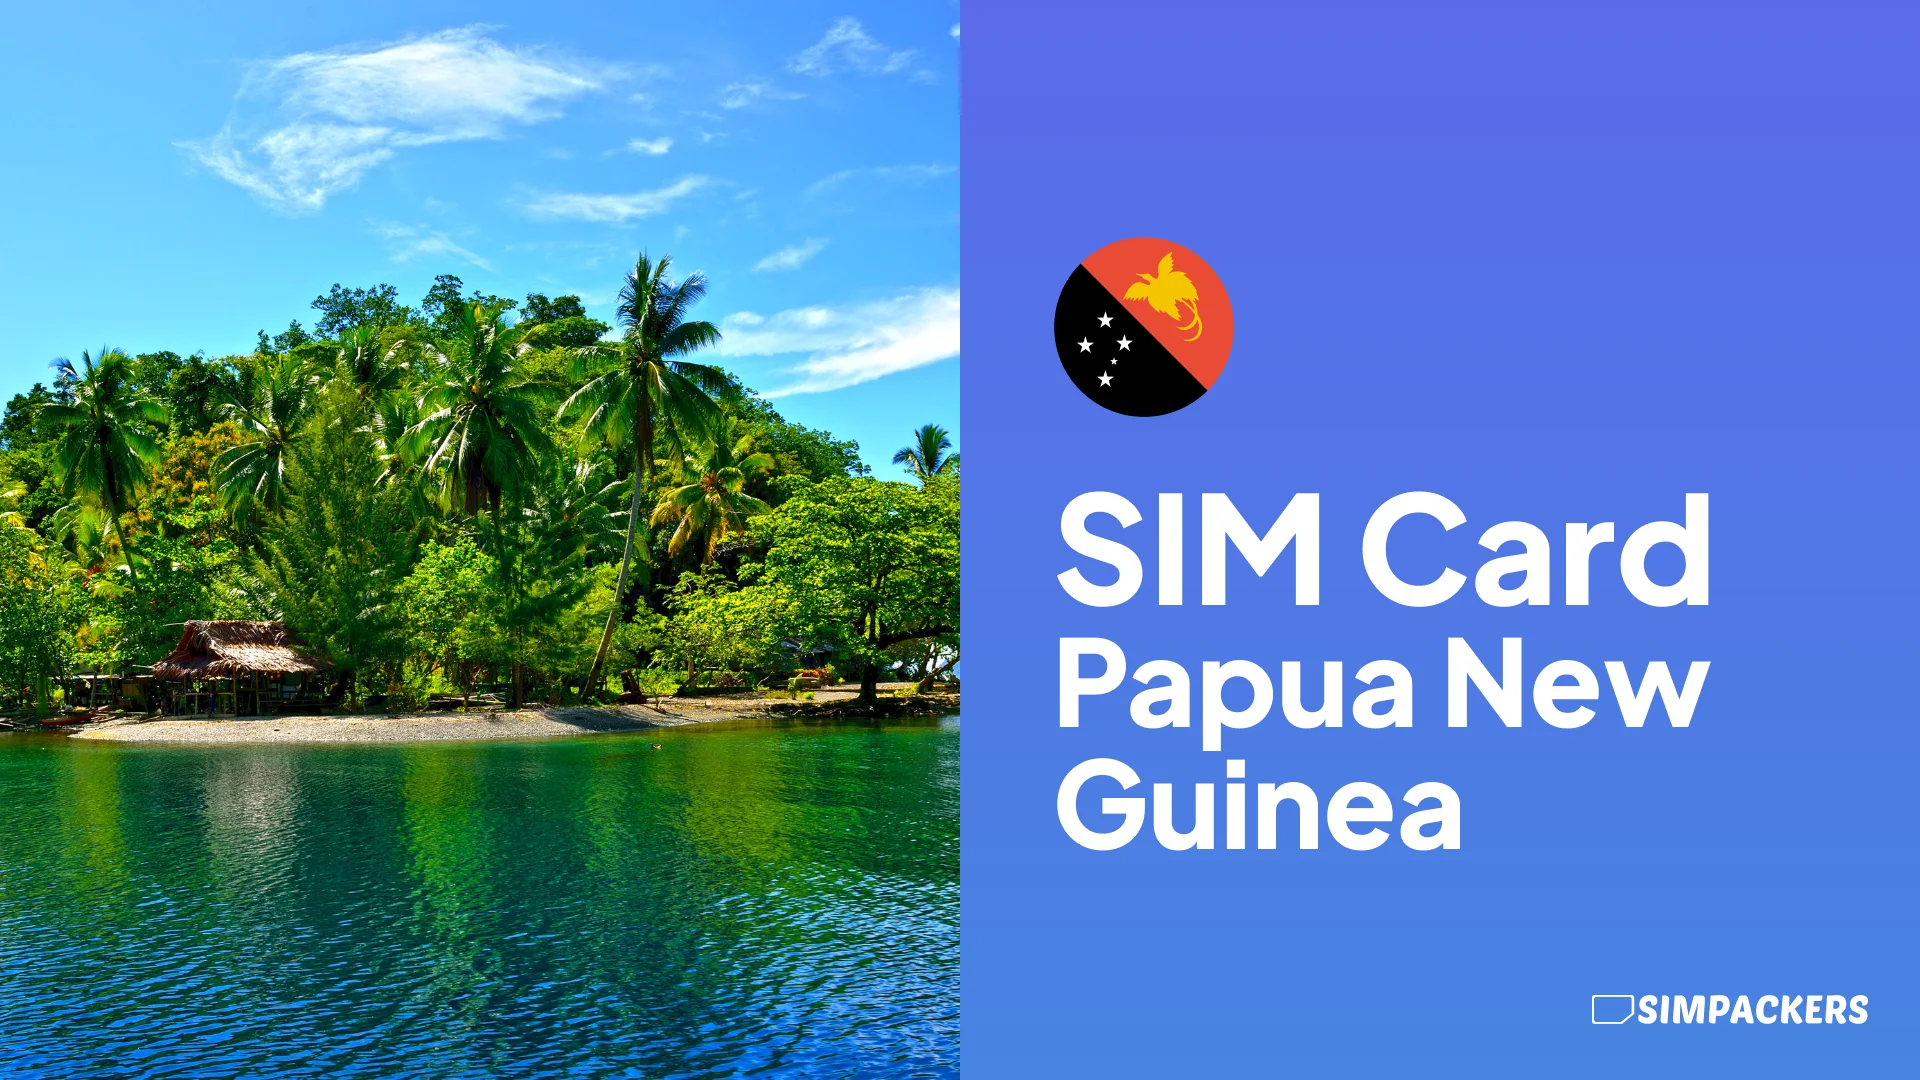 EN/FEATURED_IMAGES/sim-card-papua-new-guinea.webp